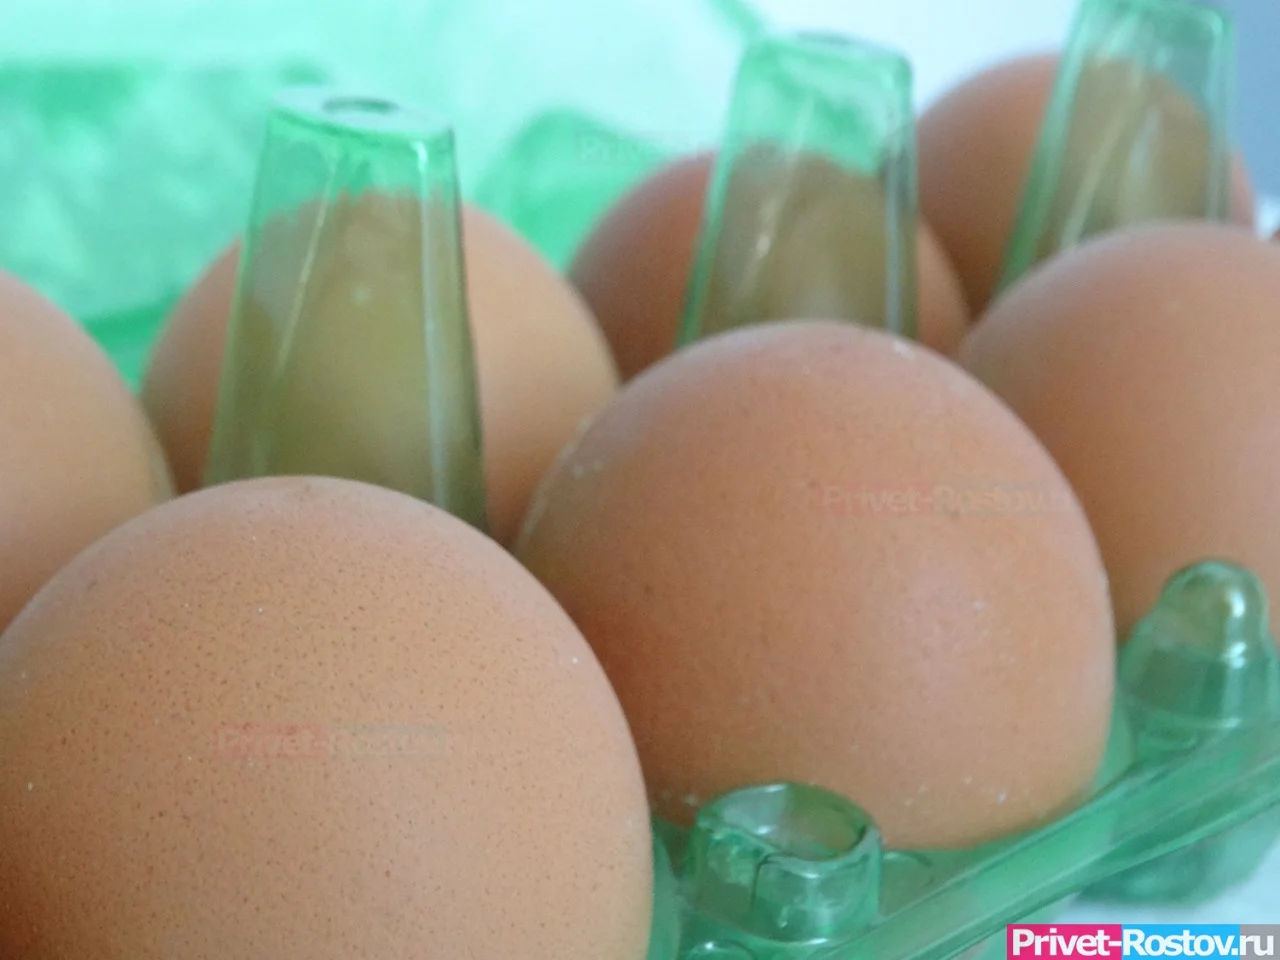 Турция начинает поставки яиц в Ростовскую область из-за аномальных цен в декабре